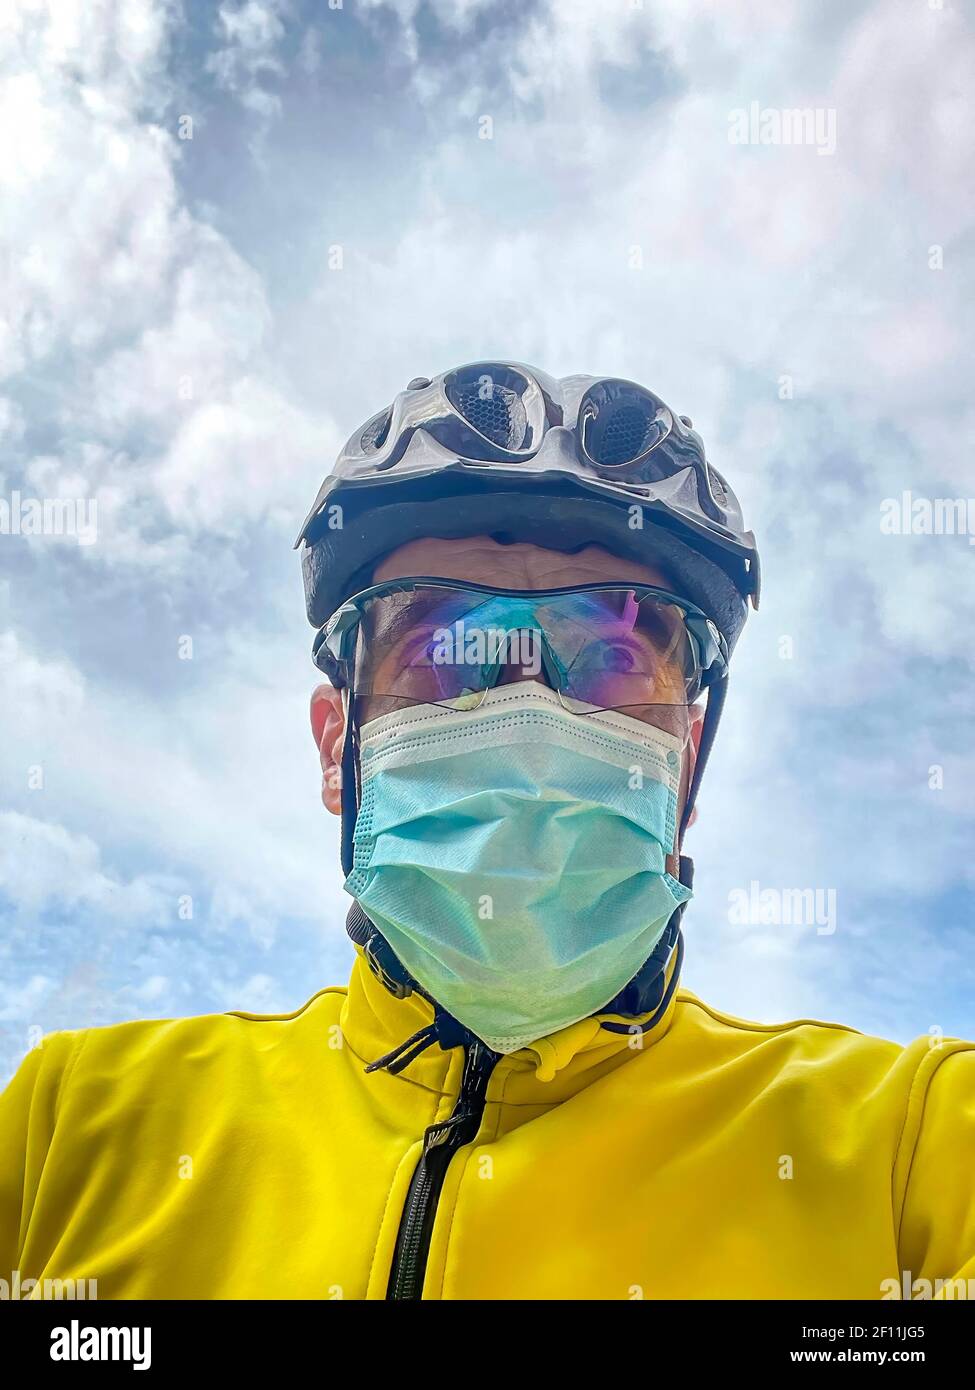 ritratto di un ciclista con casco, occhiali e giacca gialla, in bicicletta con maschera, ritratto verticale contro un cielo nuvoloso Foto Stock